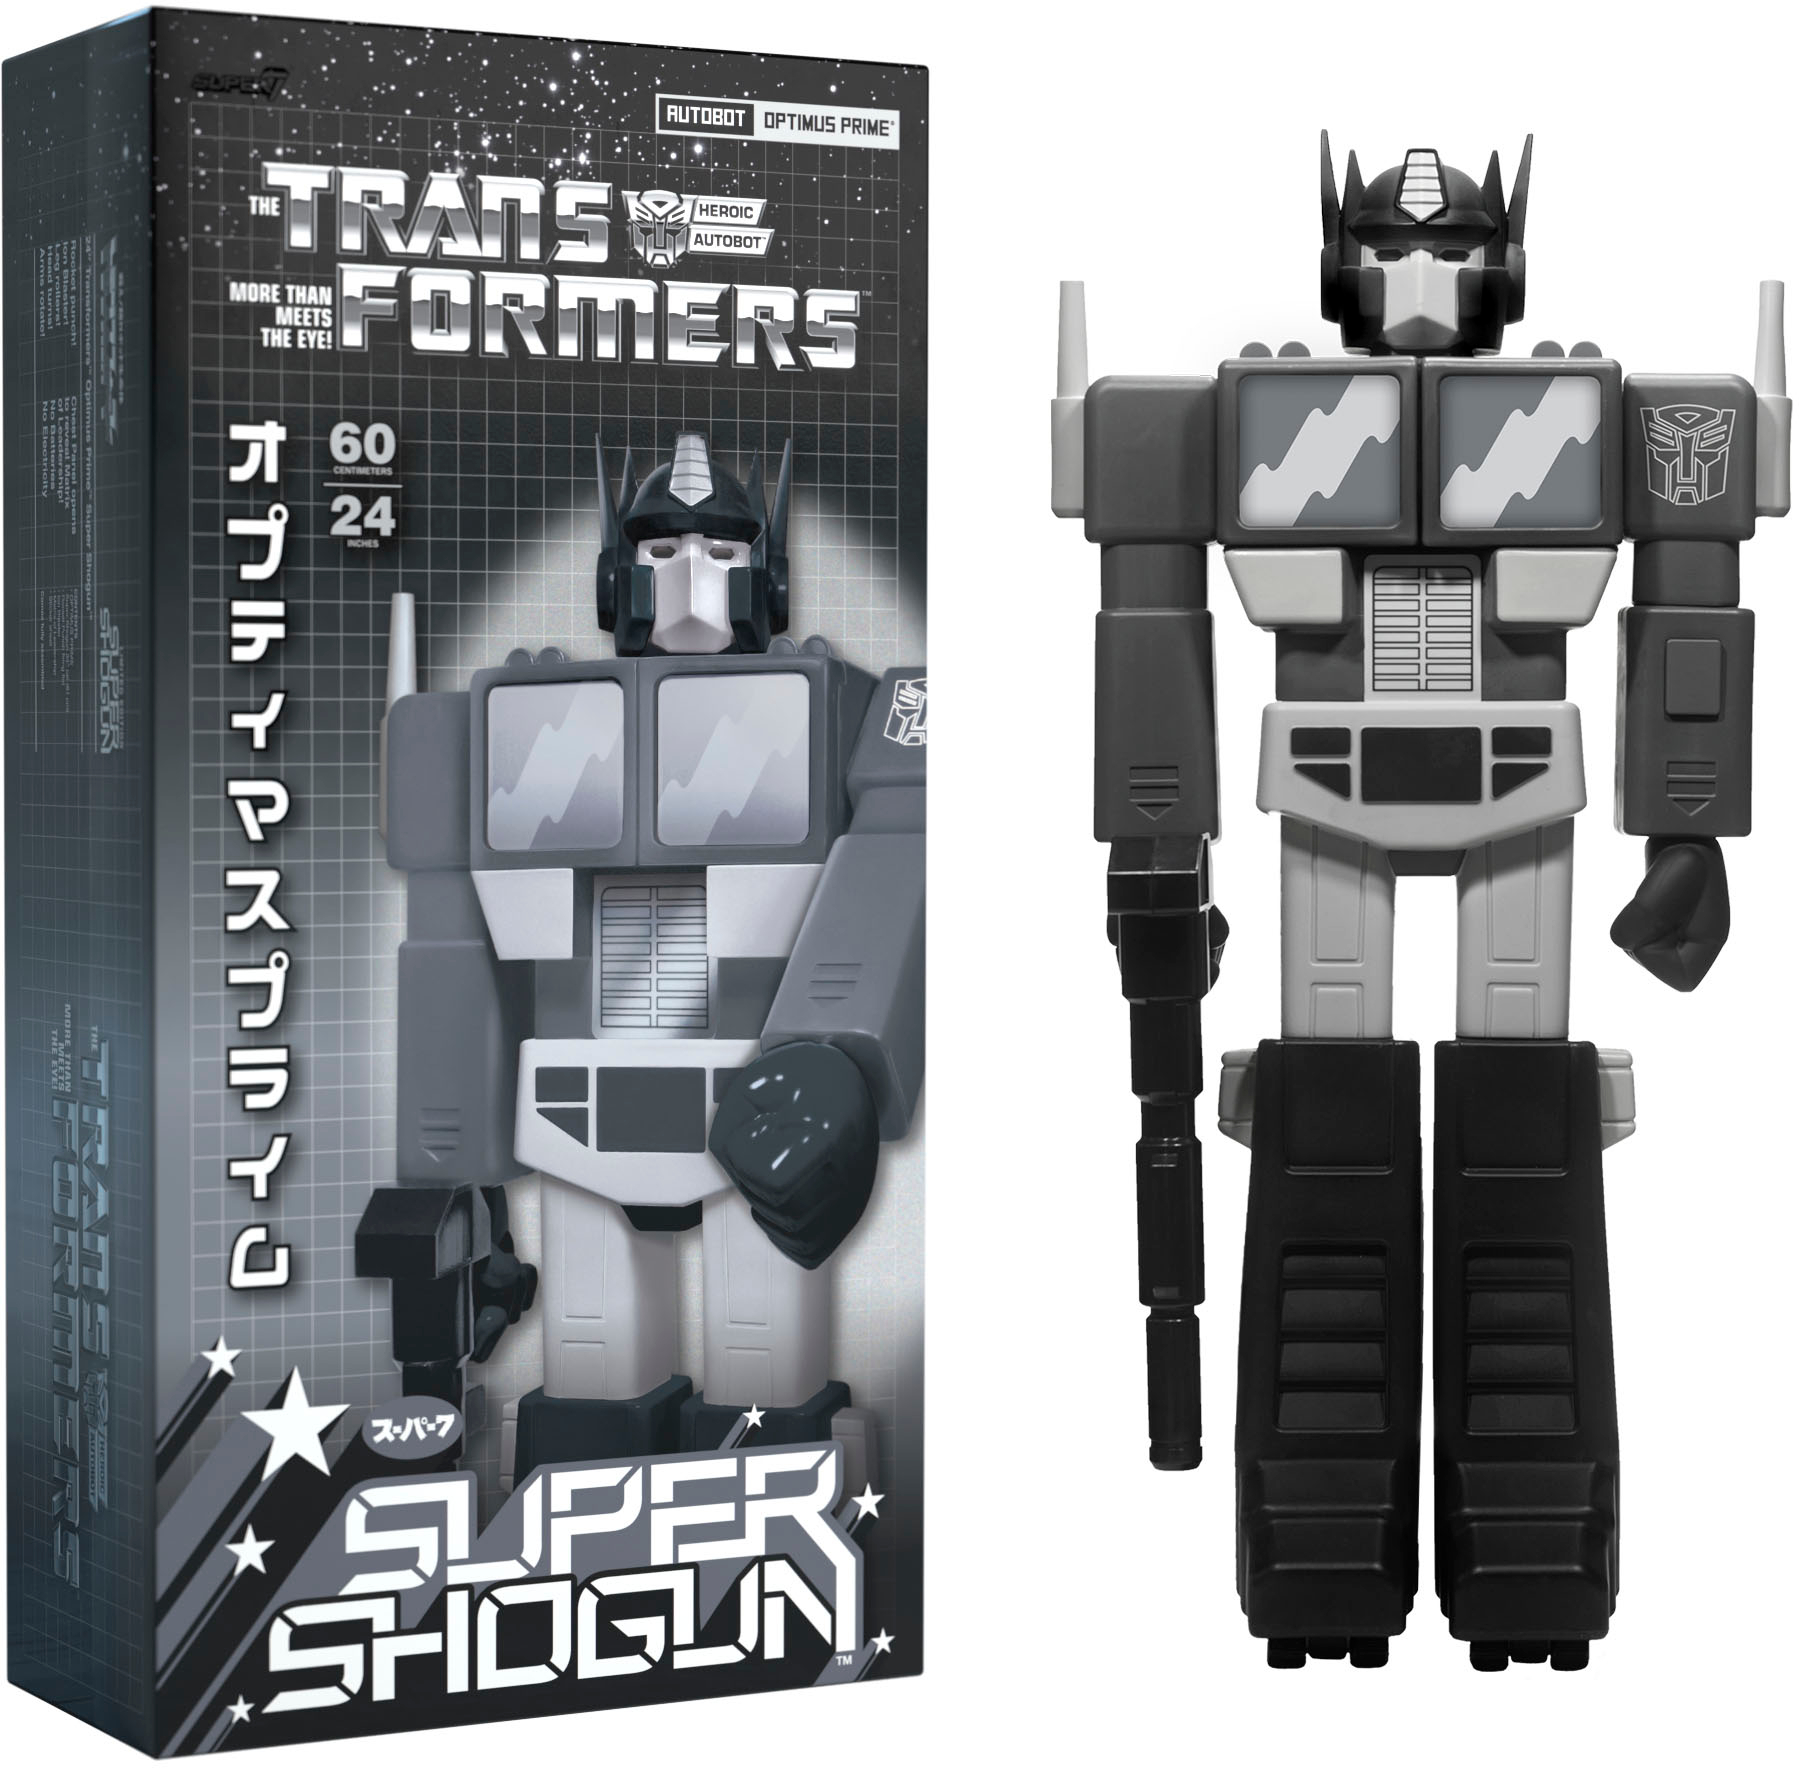 Angle View: Super7 - Super Shogun 20 in Plastic Transformers Figure - Fallen Optimus Prime